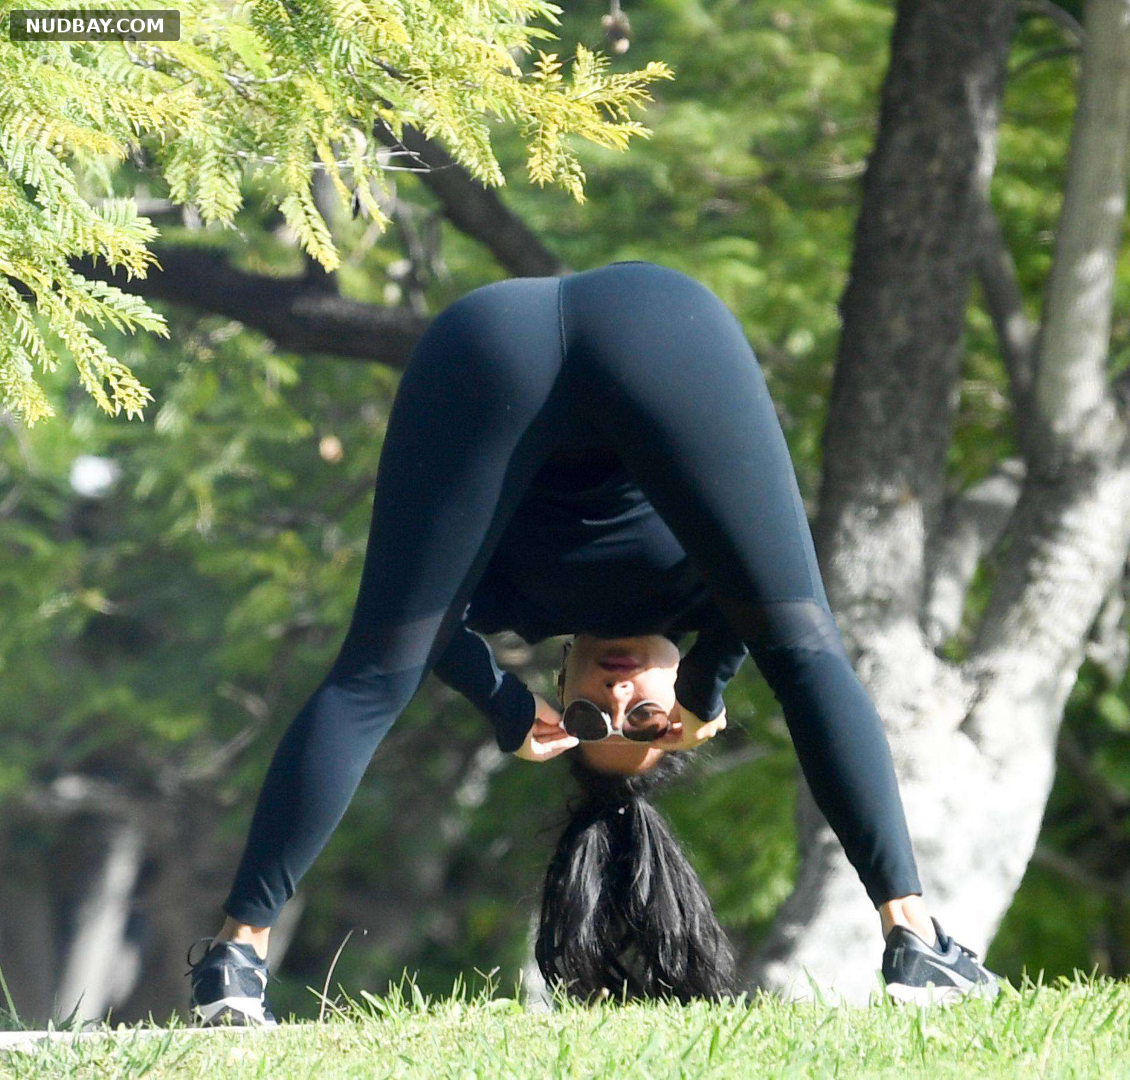 Nicole Scherzinger doing gymnastics showing ass 2020